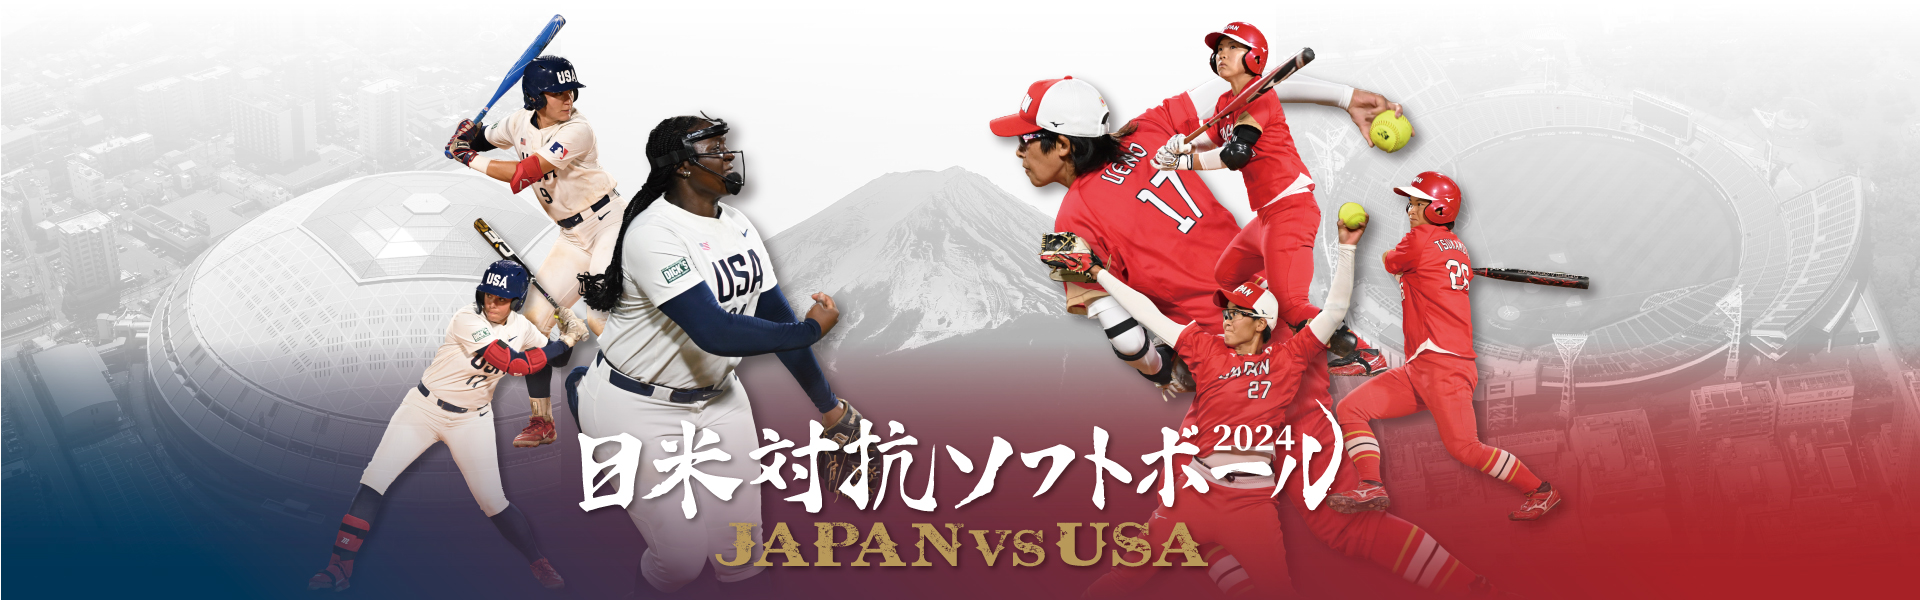 日米対抗ソフトボール2024 JAPAN vs USA